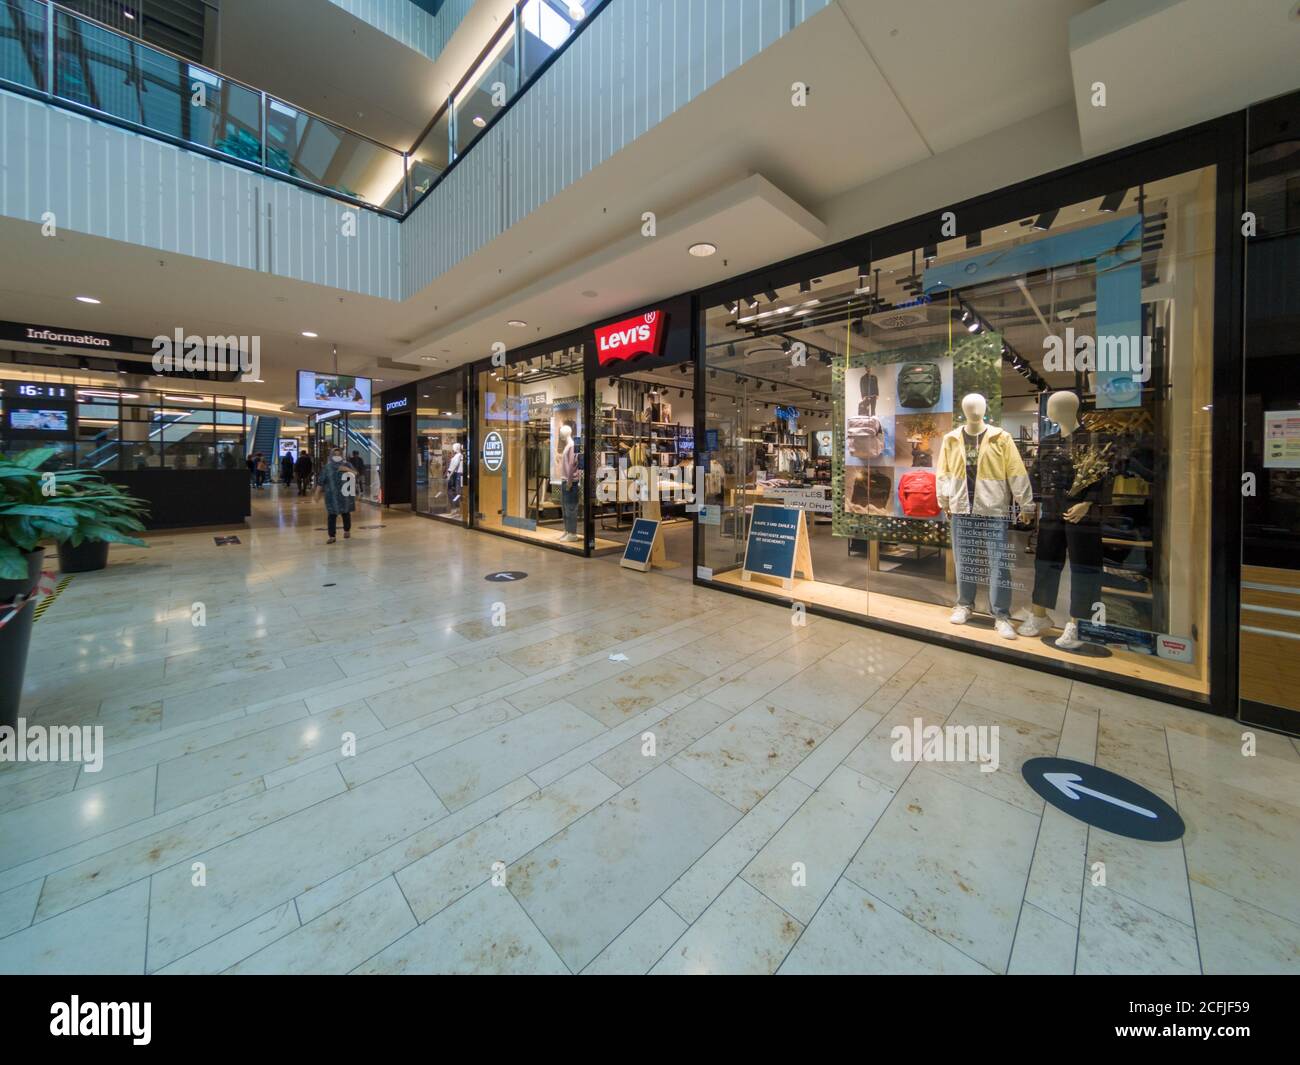 Levi's Shop Store Front in Mall in Hannover, Deutschland,  Levis  ist eine berühmte amerikanische Marke für Jeans und Hosen Stockfotografie -  Alamy